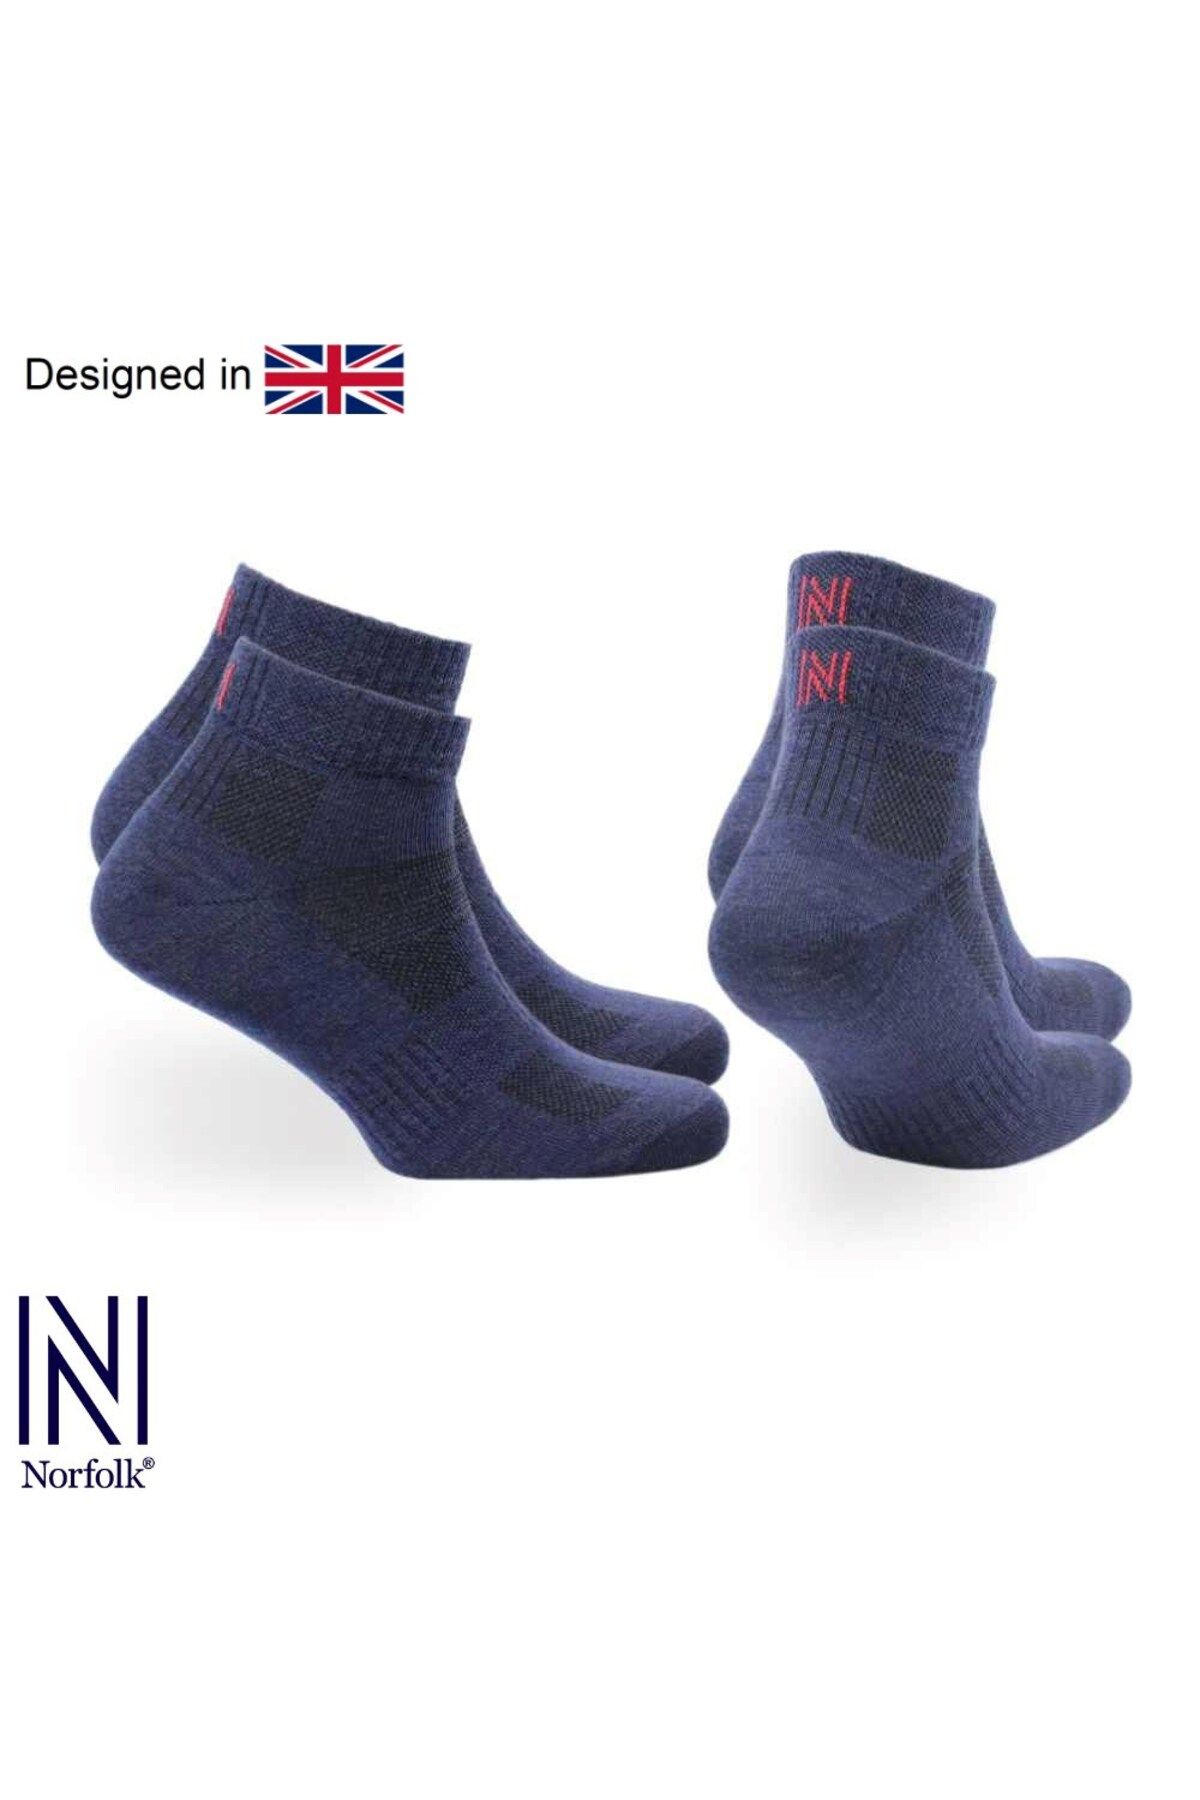 Norfolk SHELDON QTR Çeyrek Kesim Merino Yünü Outdoor Yürüyüş Çorapları 2'li Paket